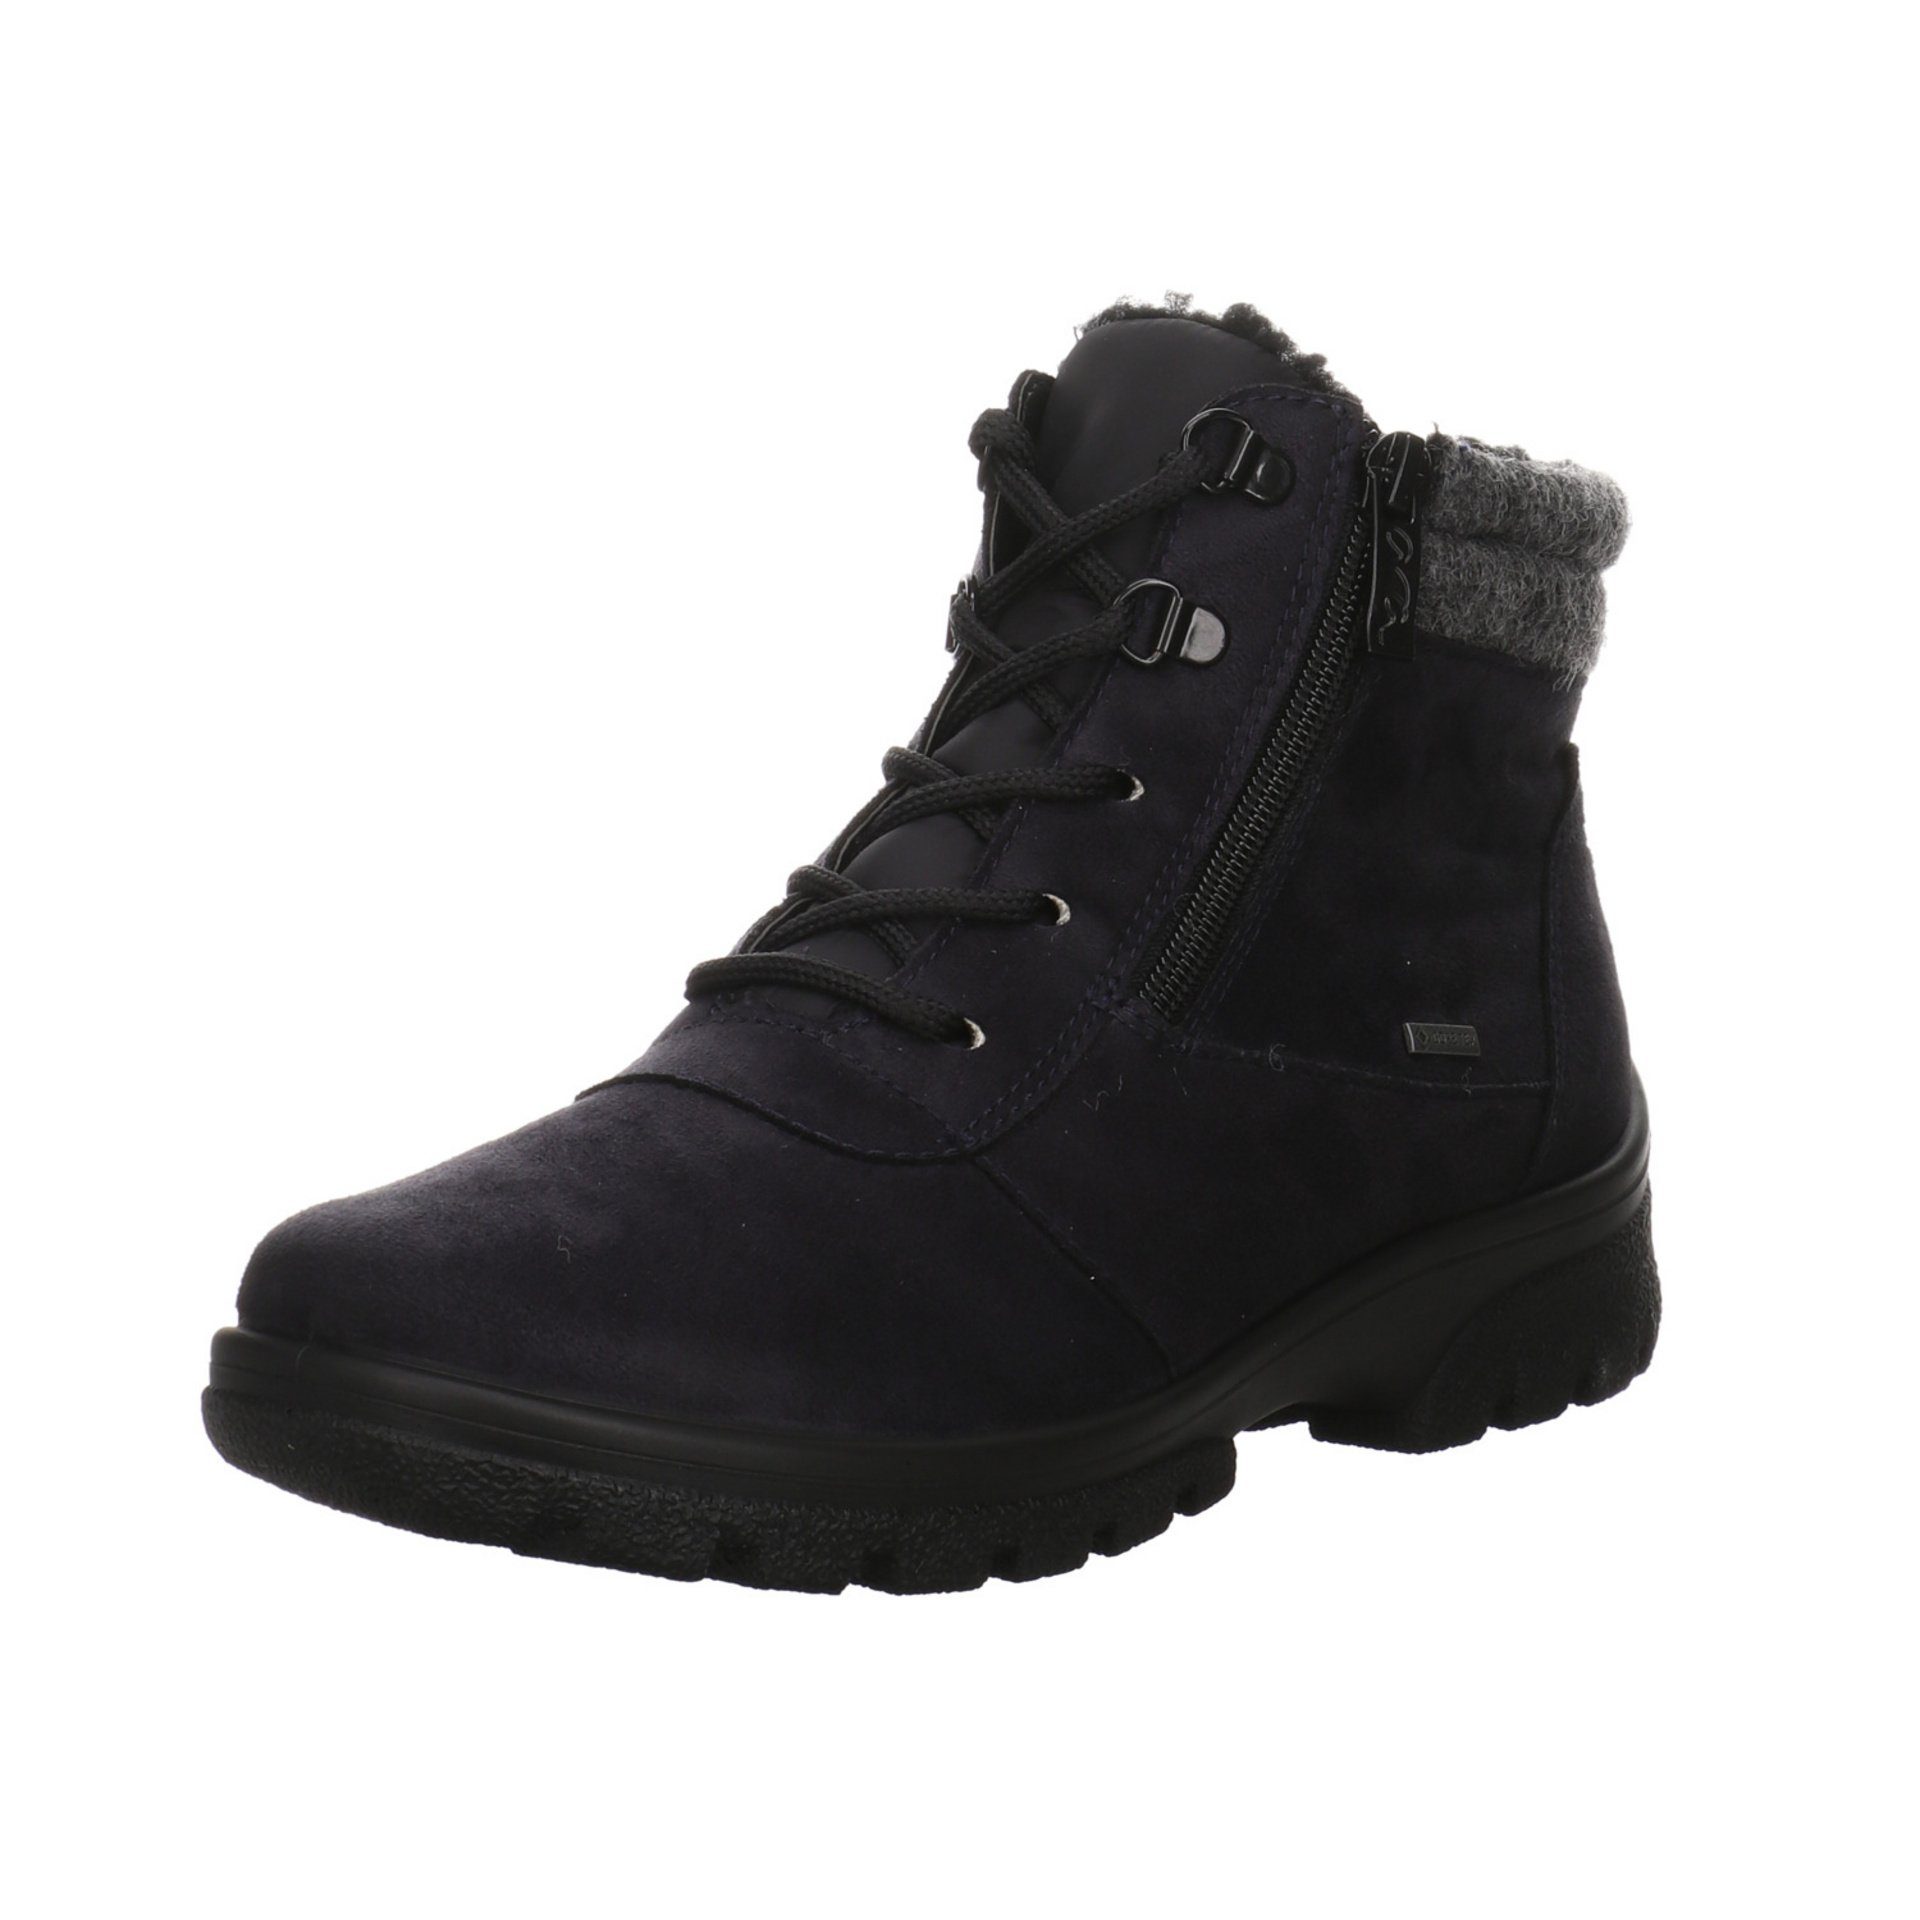 Ara Damen Snowboots Schuhe Saas-Fee Boots Snowboots Leder-/Textilkombination blau/grau/schwarz